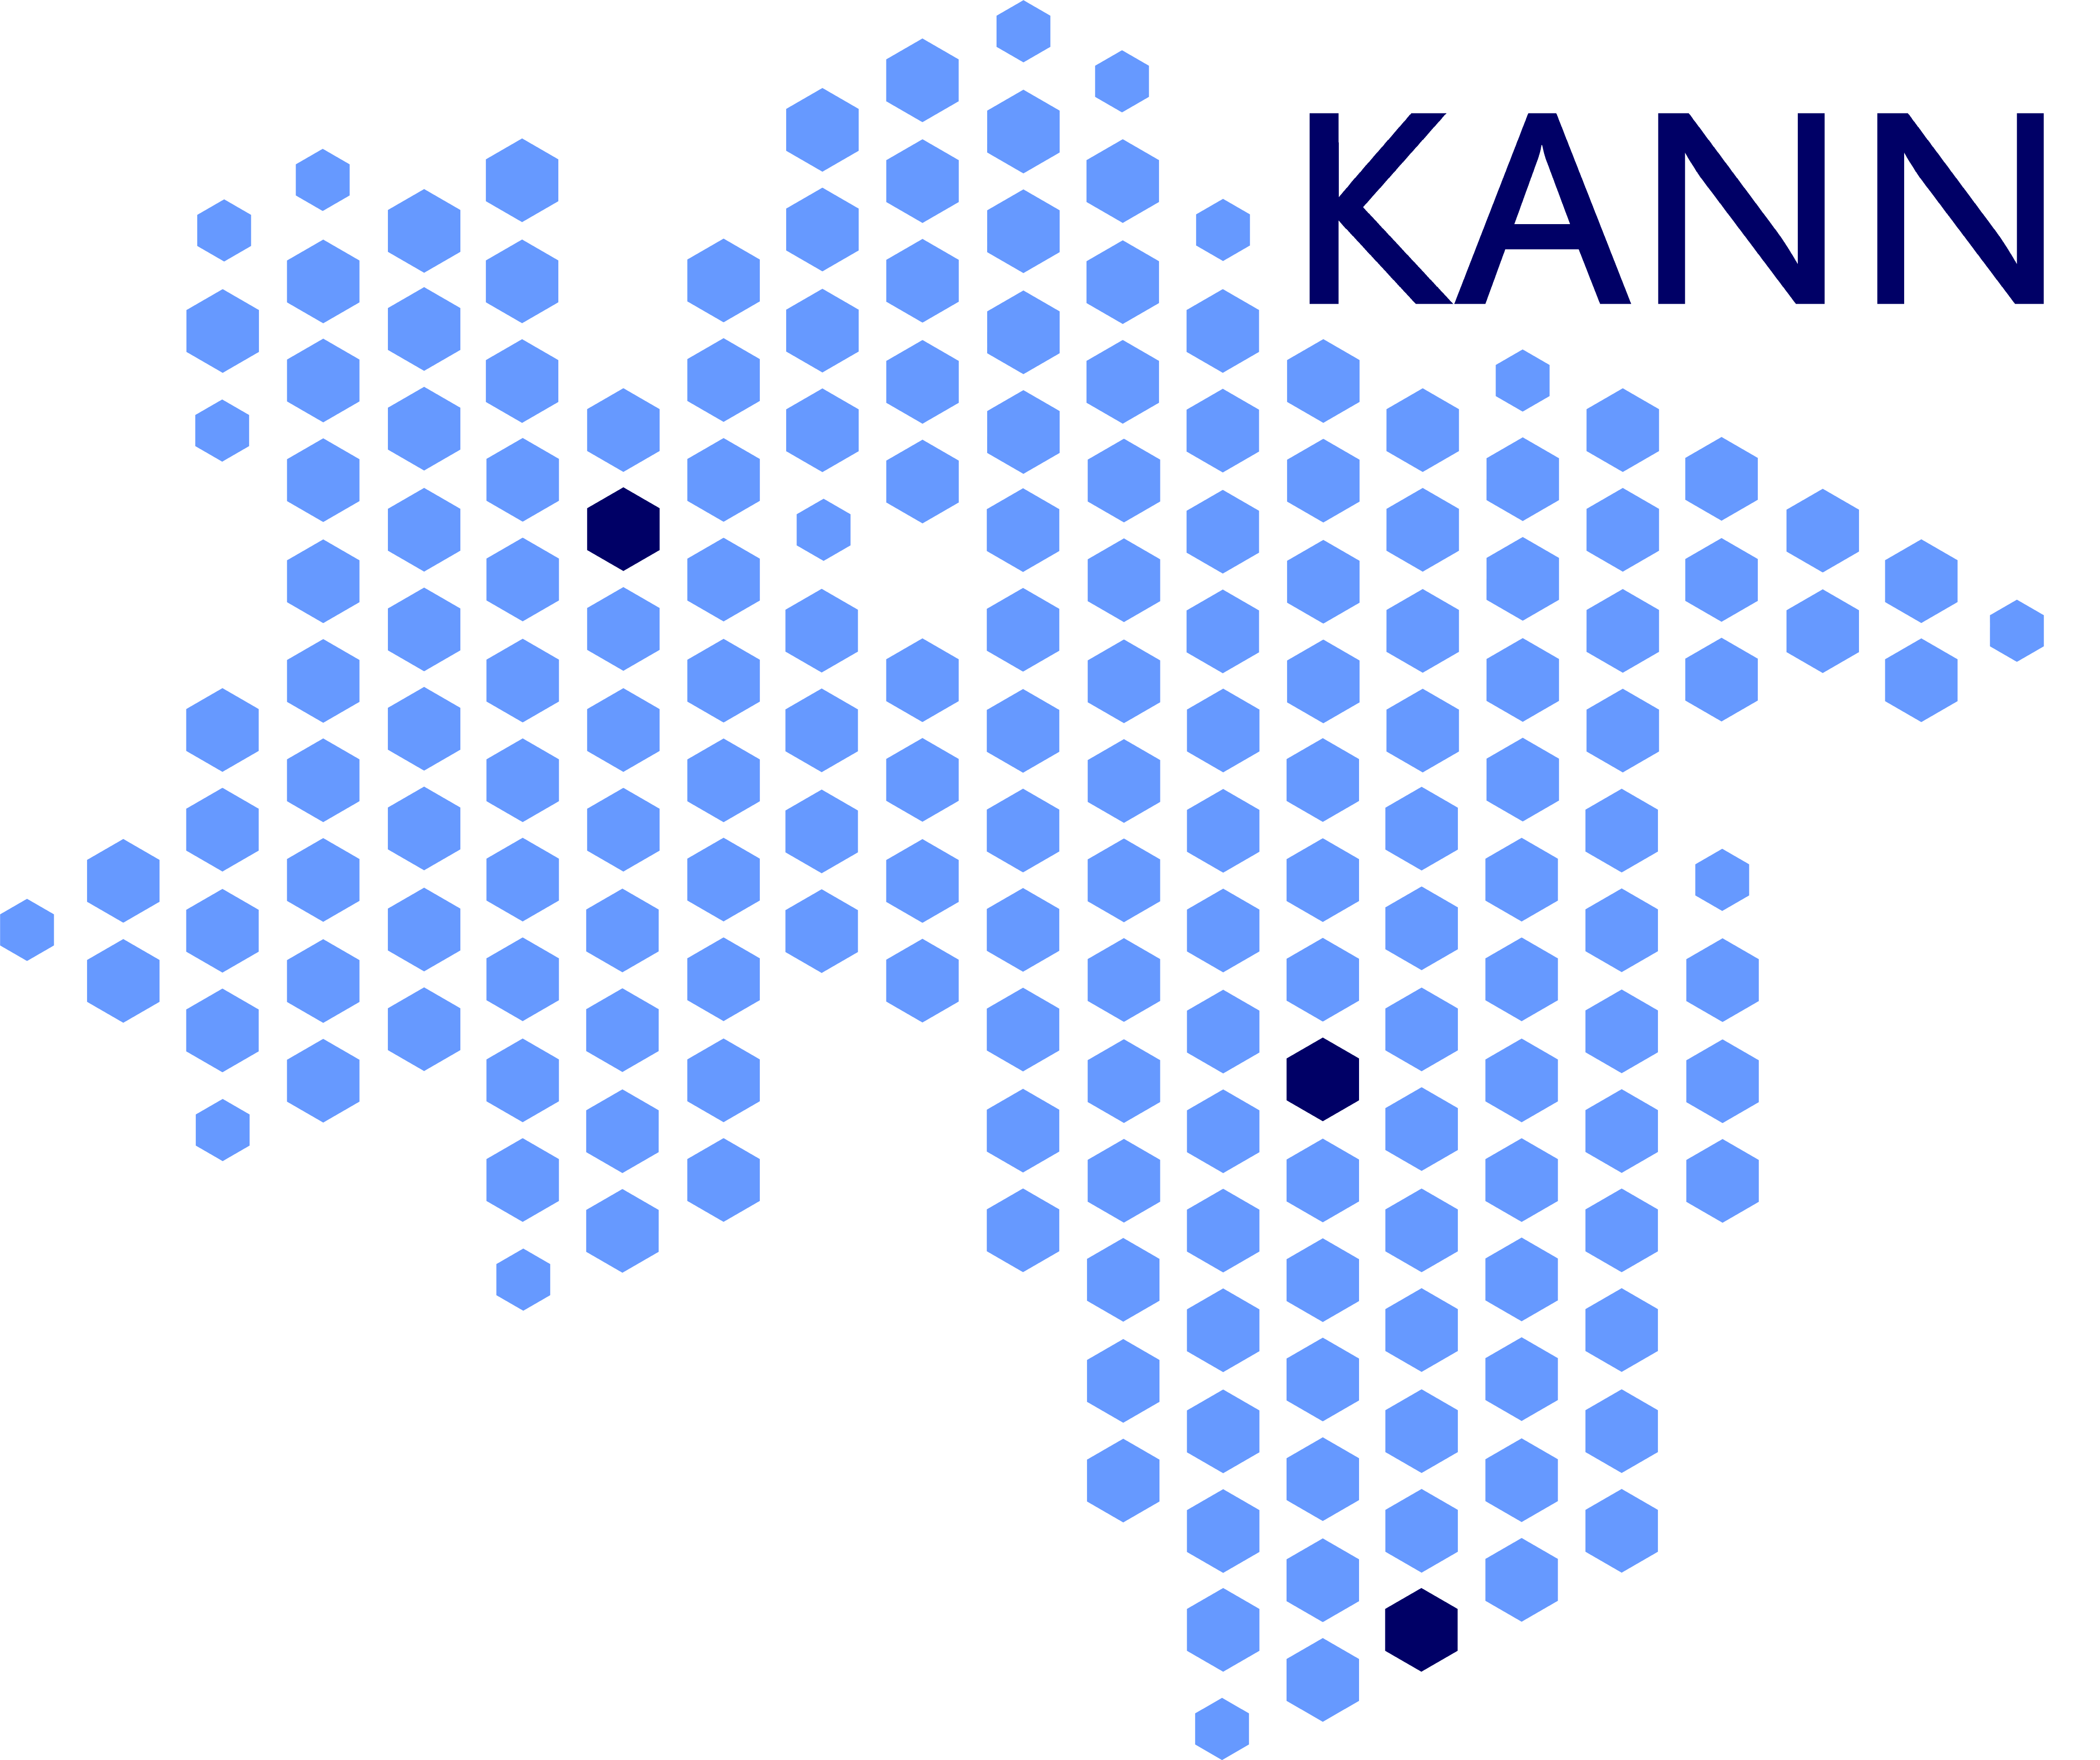 Blaue Punkte sind so angeordnet, dass sie die Karte des Bundeslandes Niedersachsen erkennen lassen. Die Darstellung stellt das Logo des KANN—des Kompetenzzentrums zur Förderung der Weiterbildung Allgemeinmedizin Niedersachsen—dar.